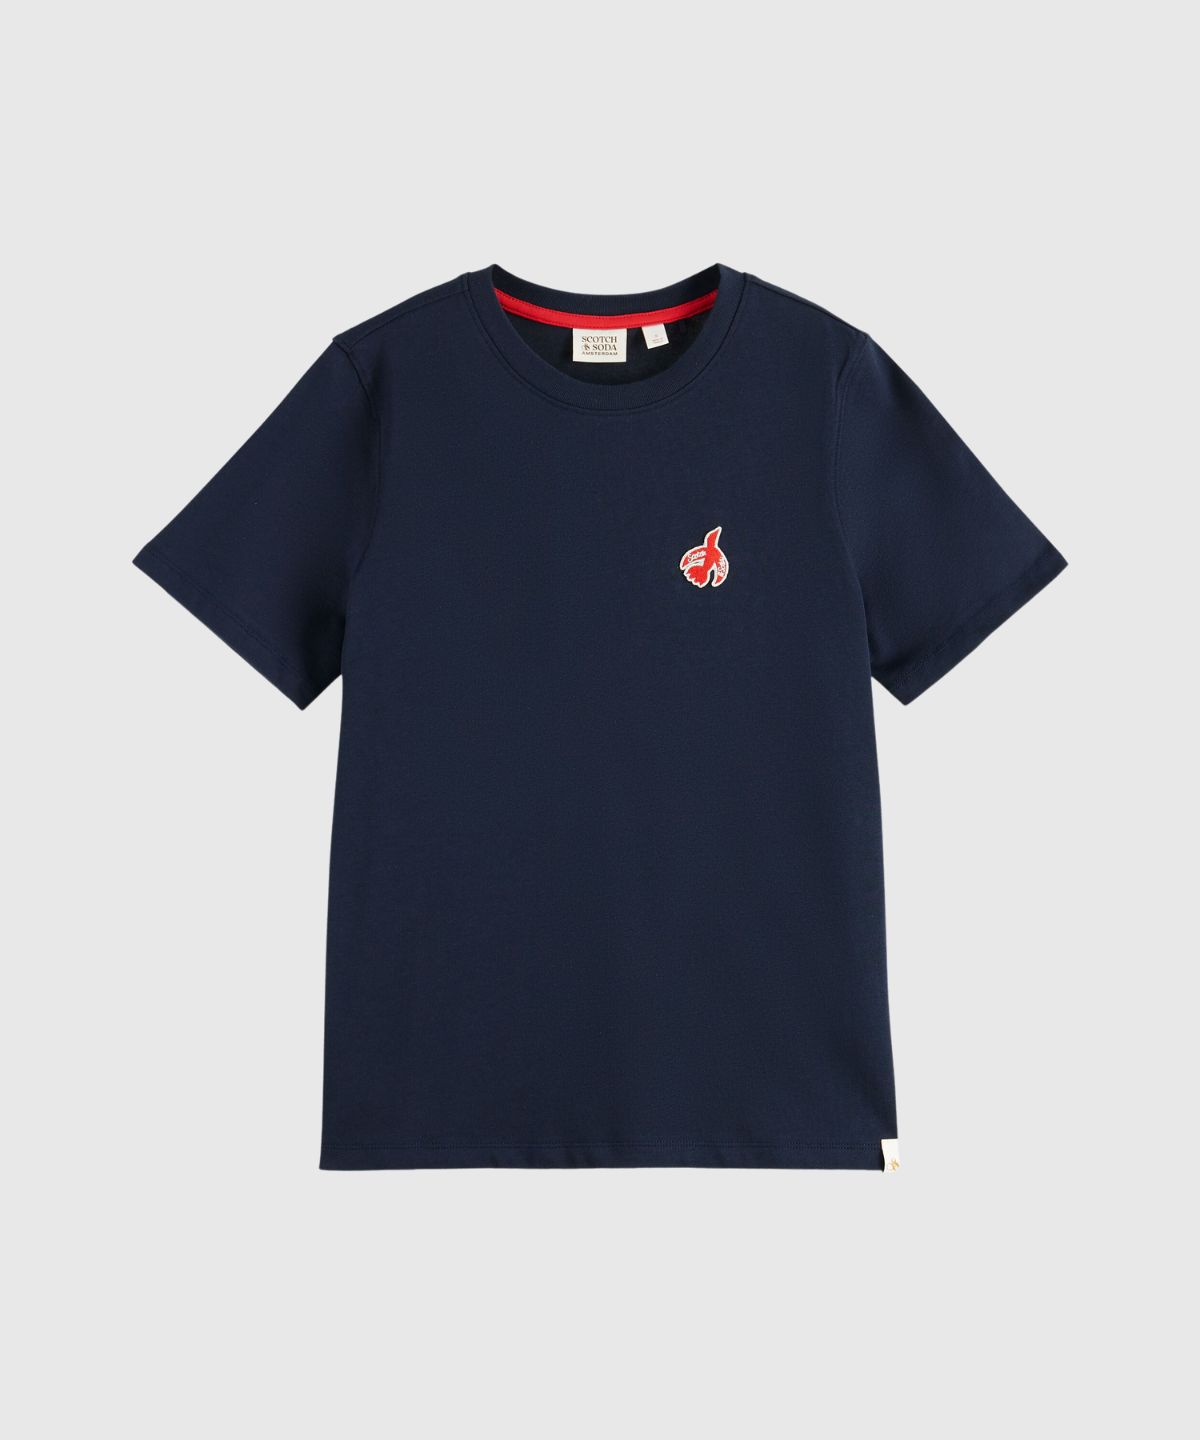 The free spirit peace bird regular fit t-shirt